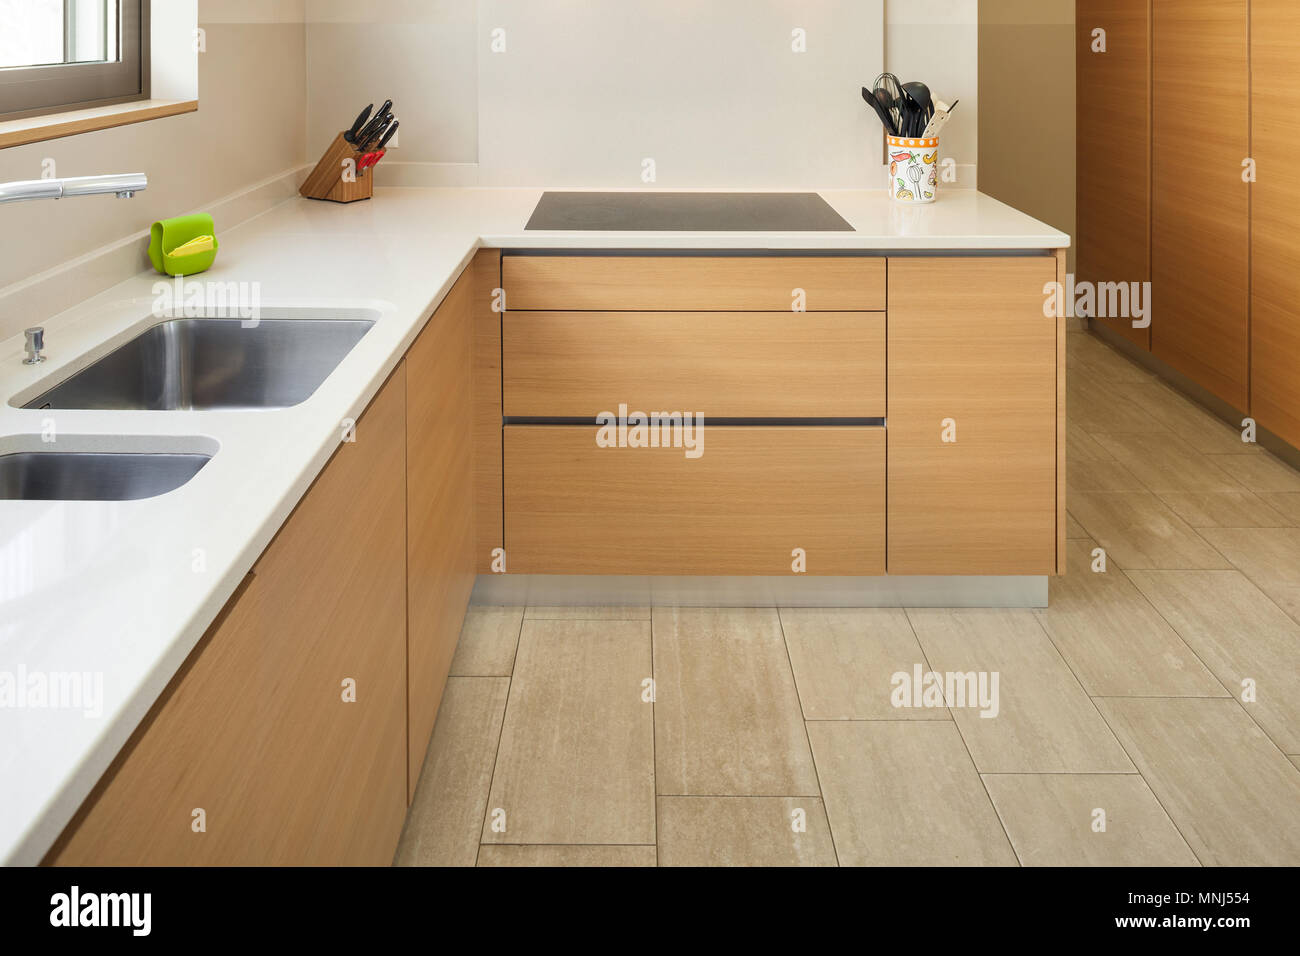 Interno di un moderno appartamento arredato, ampia cucina domestica Foto Stock